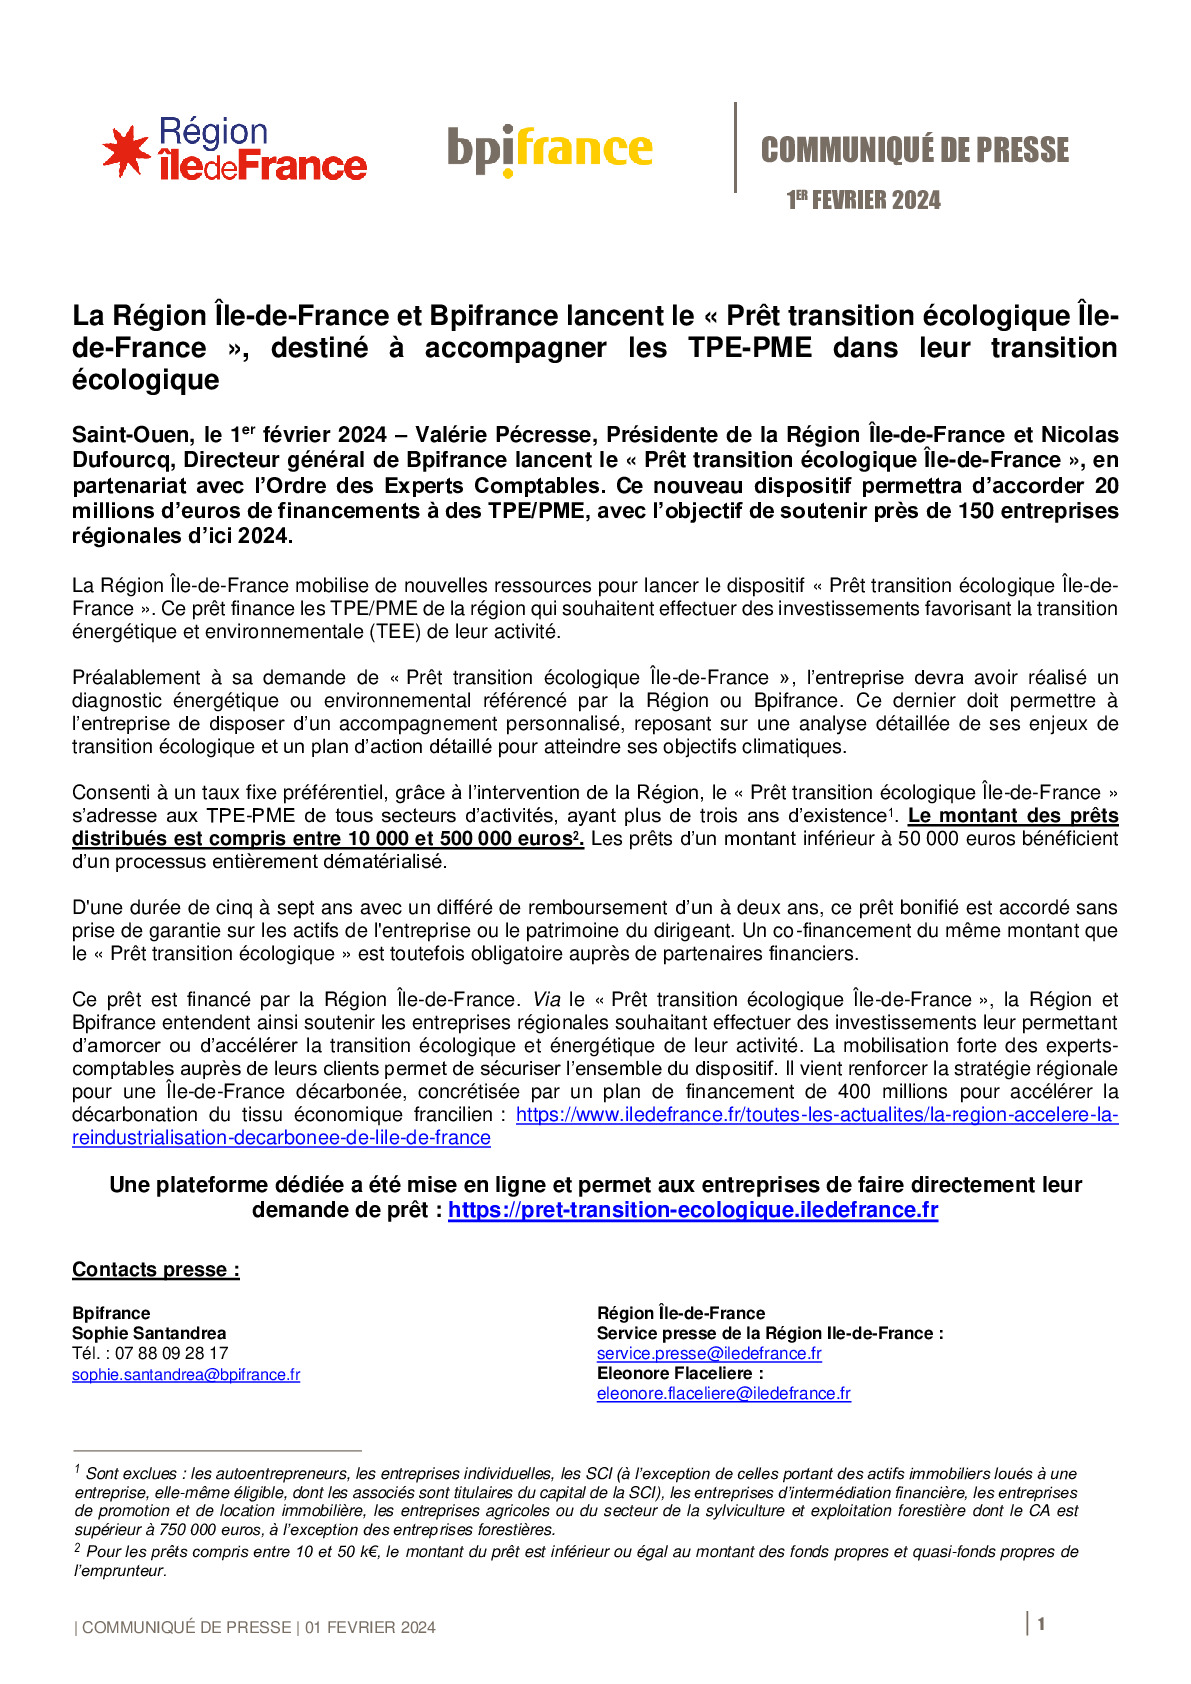 2024 02 01 – CP Prêt transition écologique IDF_Bpifrance_Région_Île-de-France-pdf